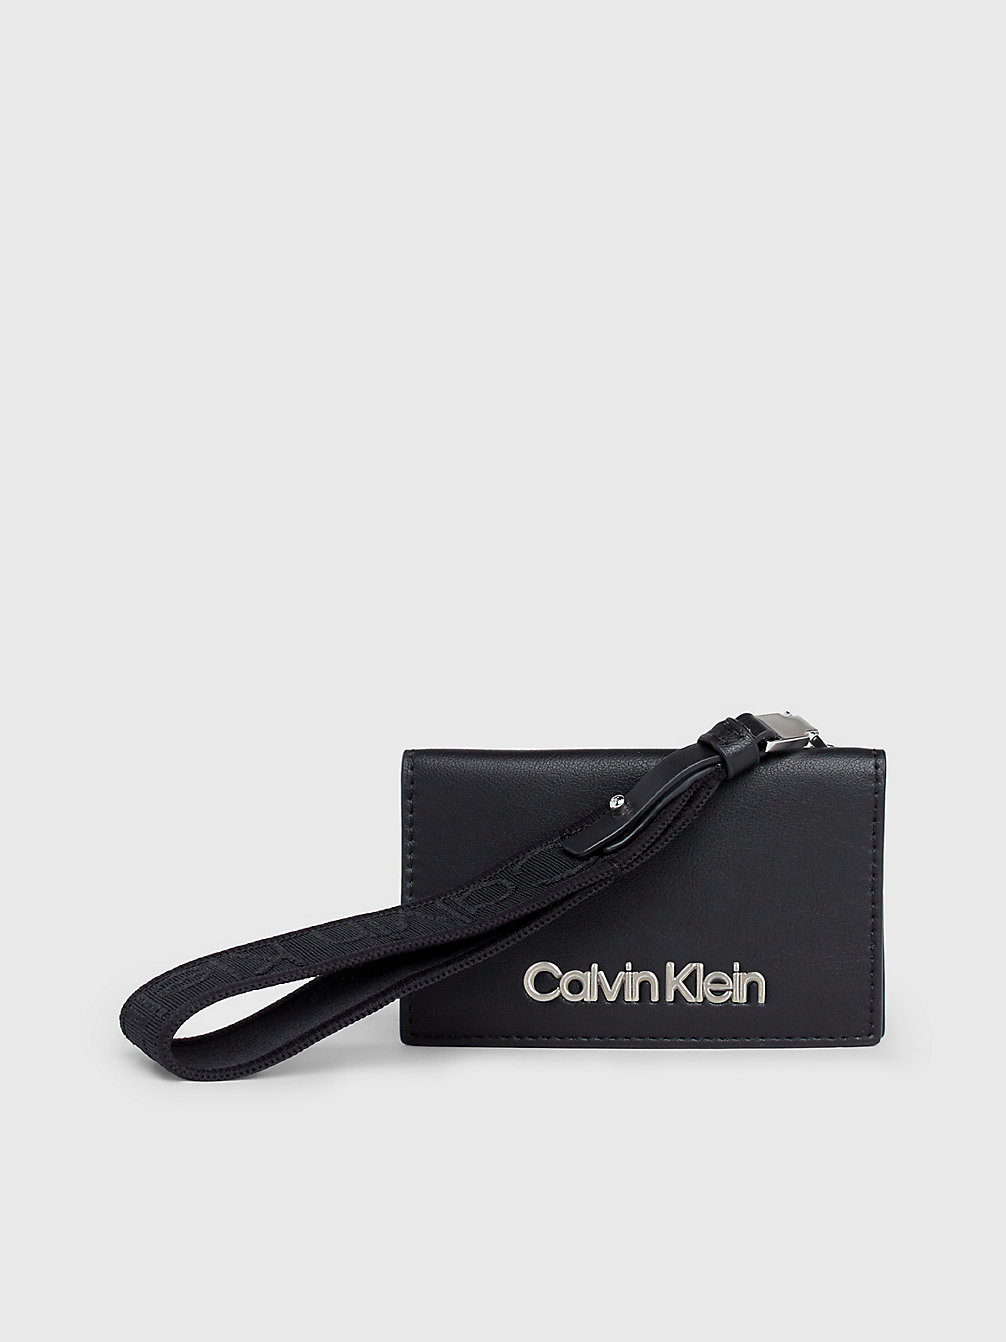 CK BLACK Rfid Wristlet Zip Around Wallet undefined Women Calvin Klein